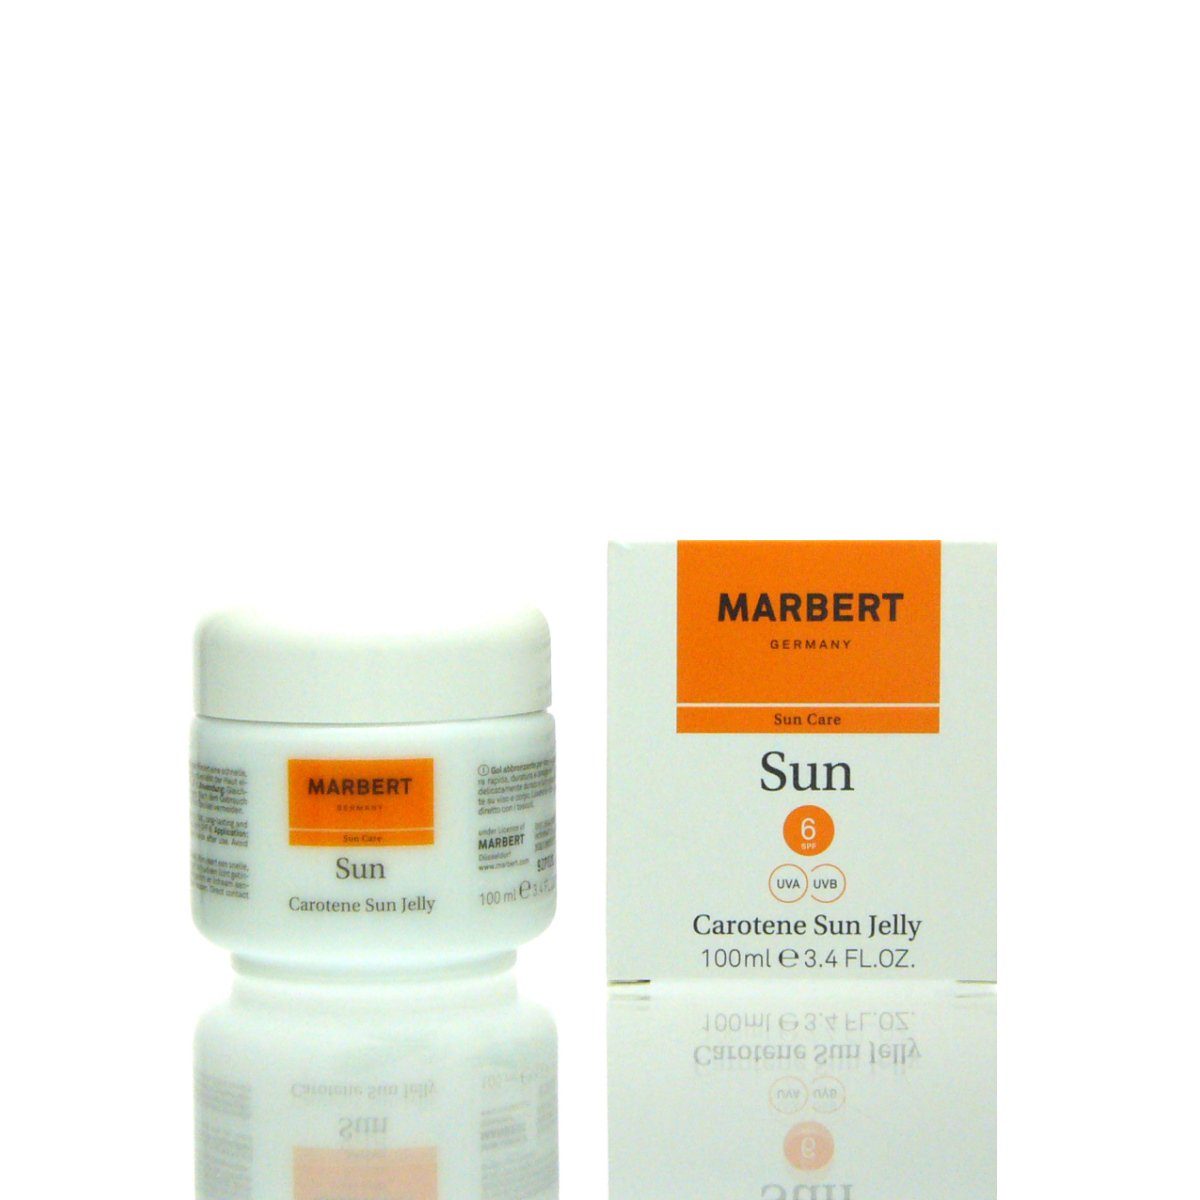 100 Jelly Carotene Sun Sun Make-up Marbert 6 ml SPF Marbert